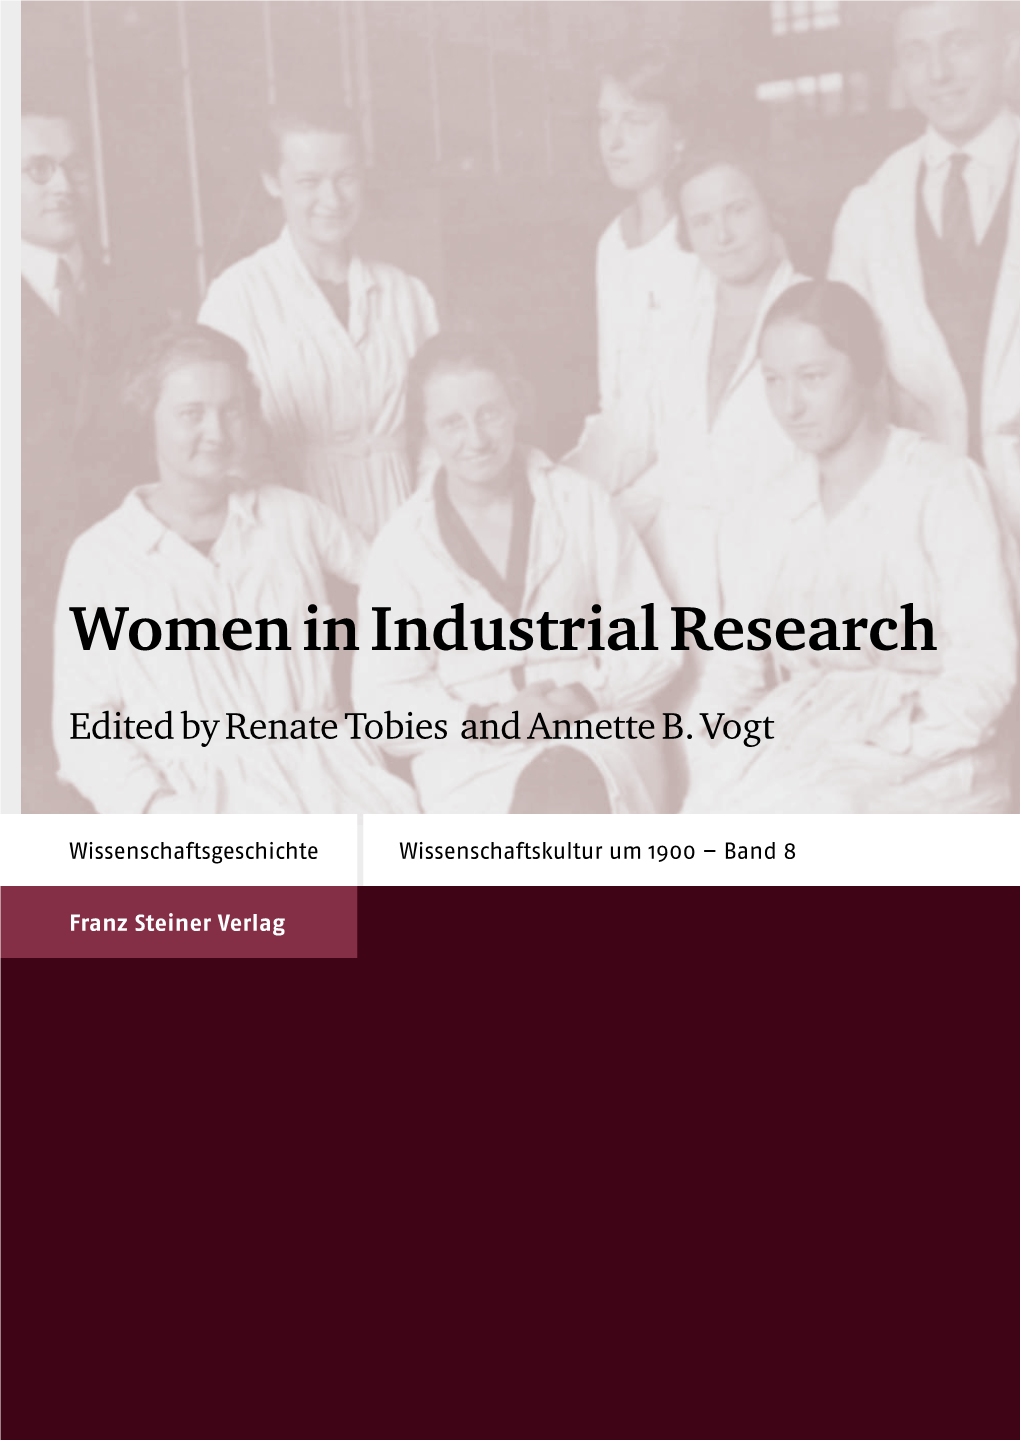 Women in Industrial Research